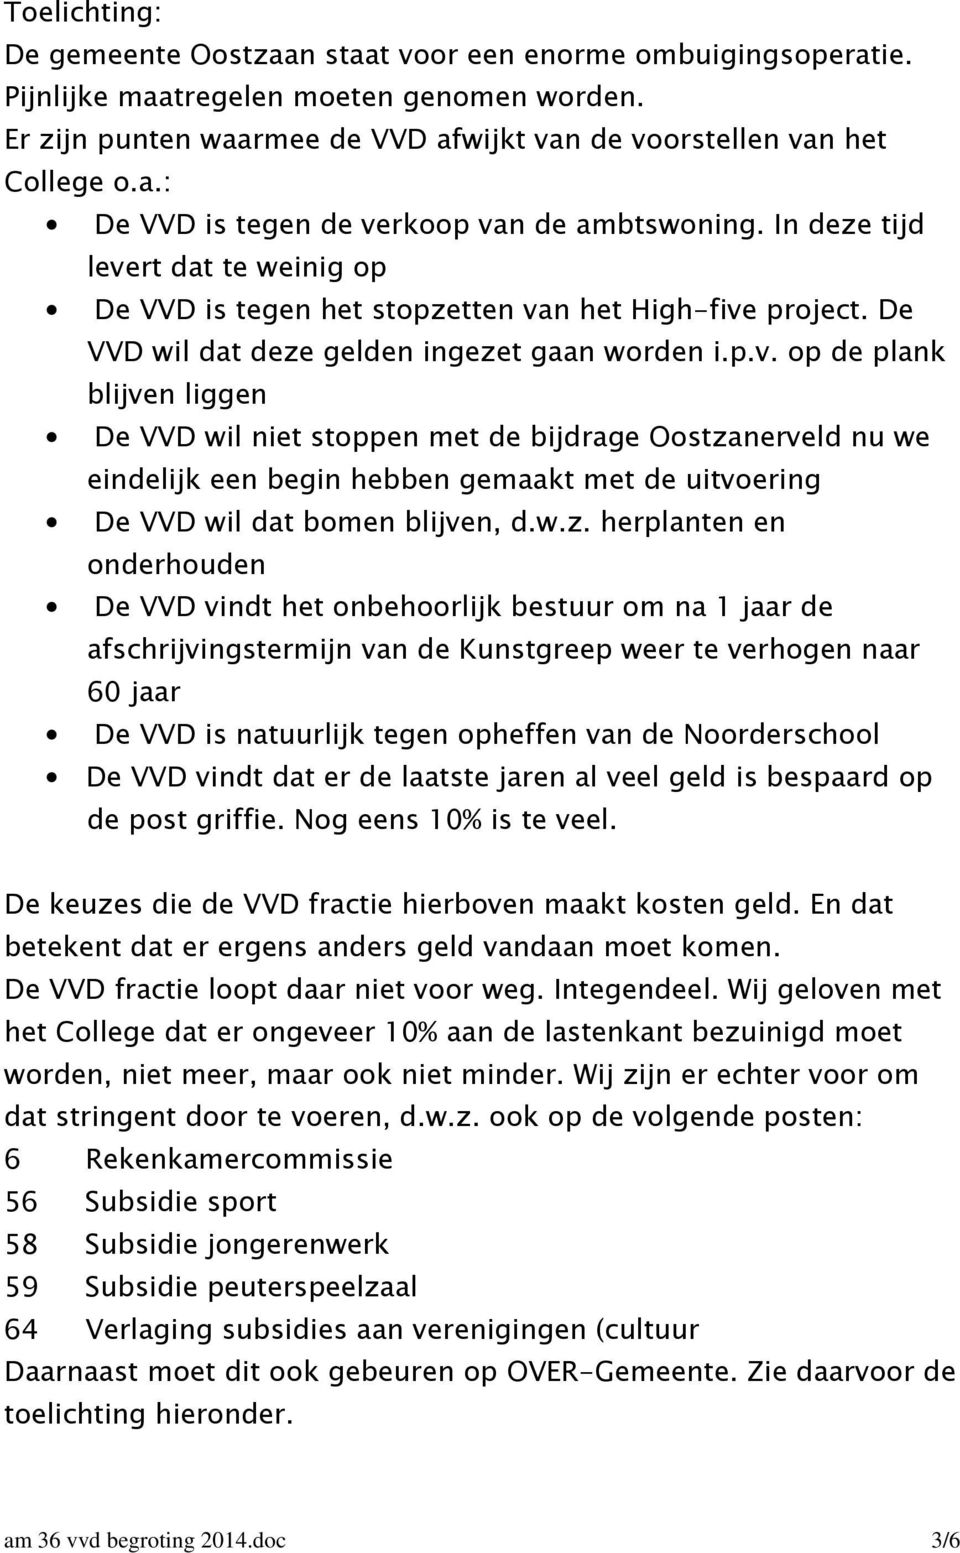 w.z. herplanten en onderhouden De VVD vindt het onbehoorlijk bestuur om na 1 jaar de afschrijvingstermijn van de Kunstgreep weer te verhogen naar 60 jaar De VVD is natuurlijk tegen opheffen van de